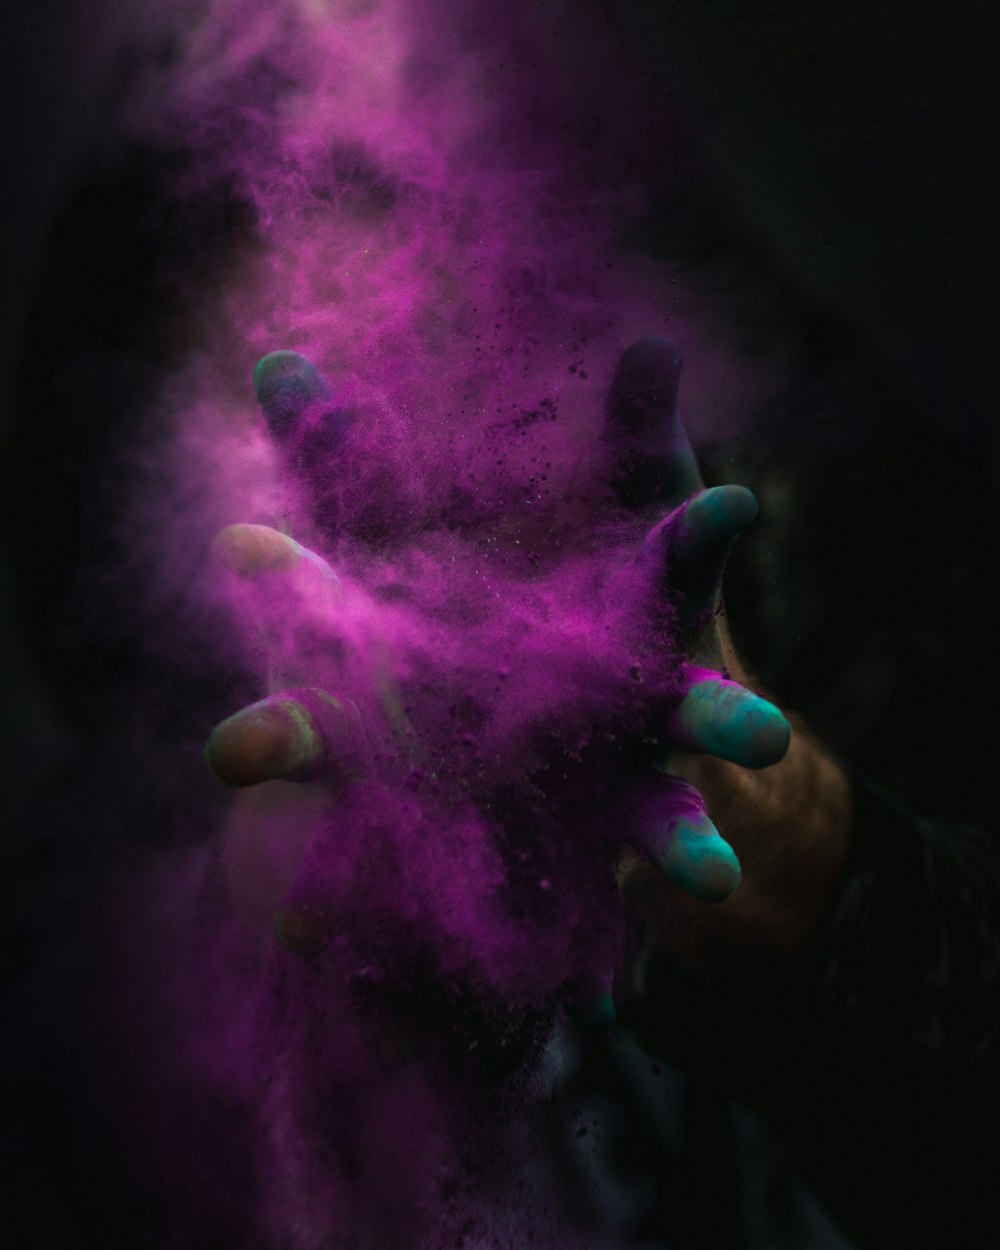 Fotografia time-lapse di una persona che sparge polvere viola